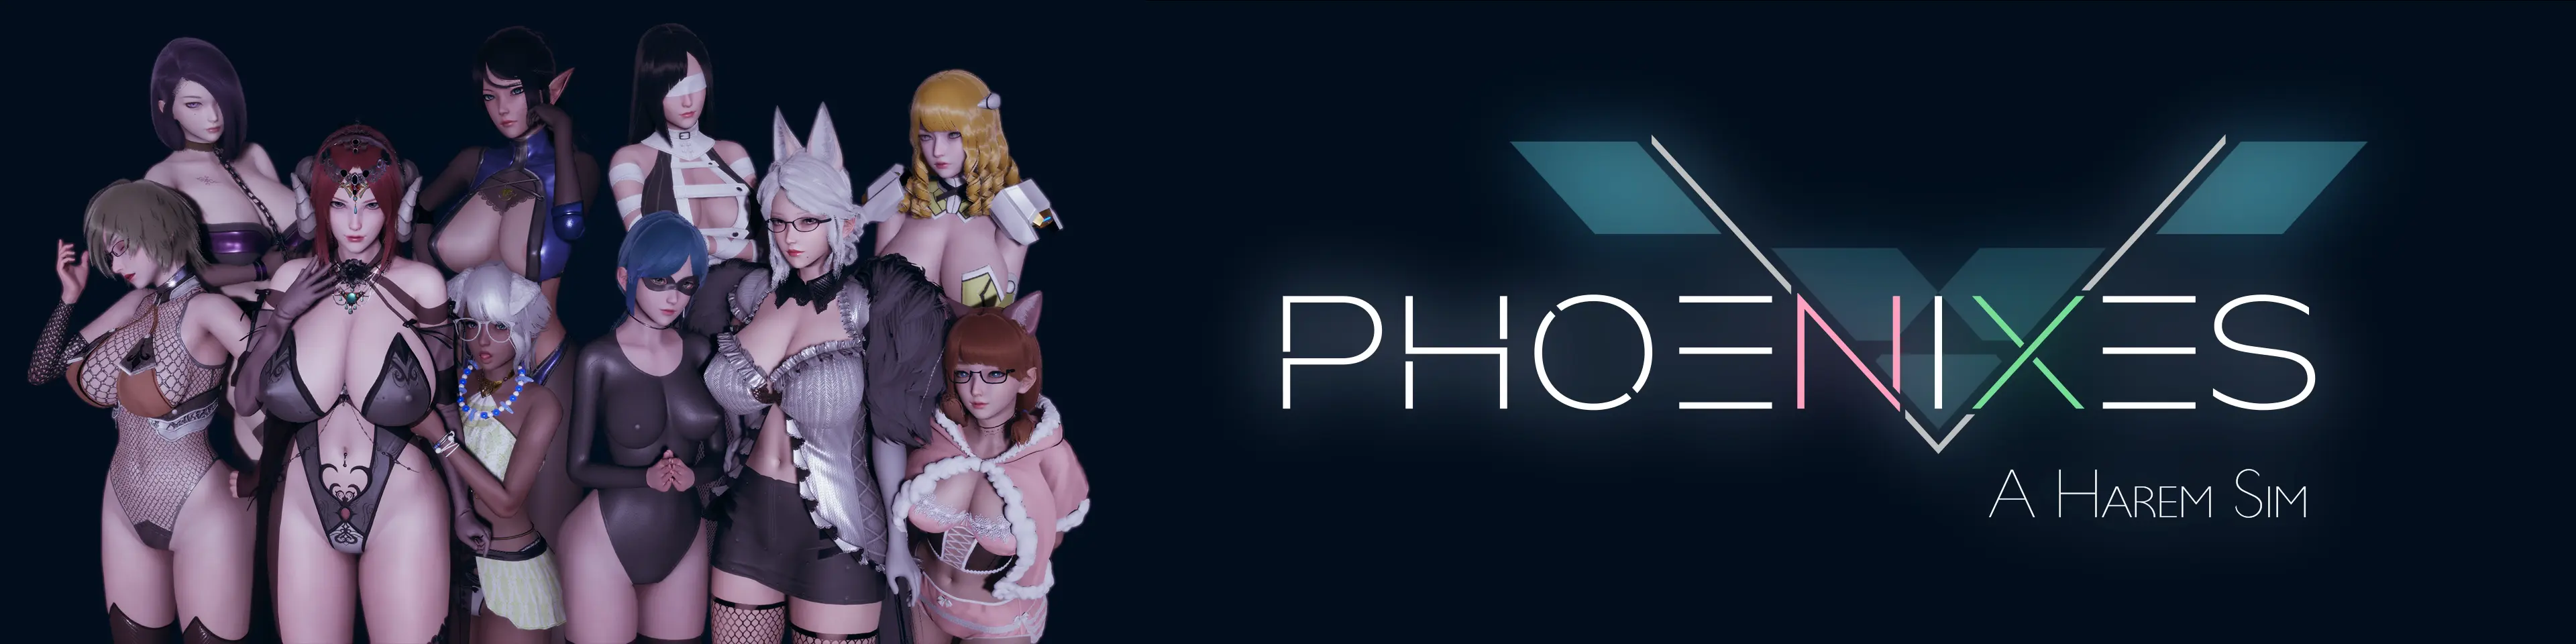 Phoenixes [v0.1.0] main image